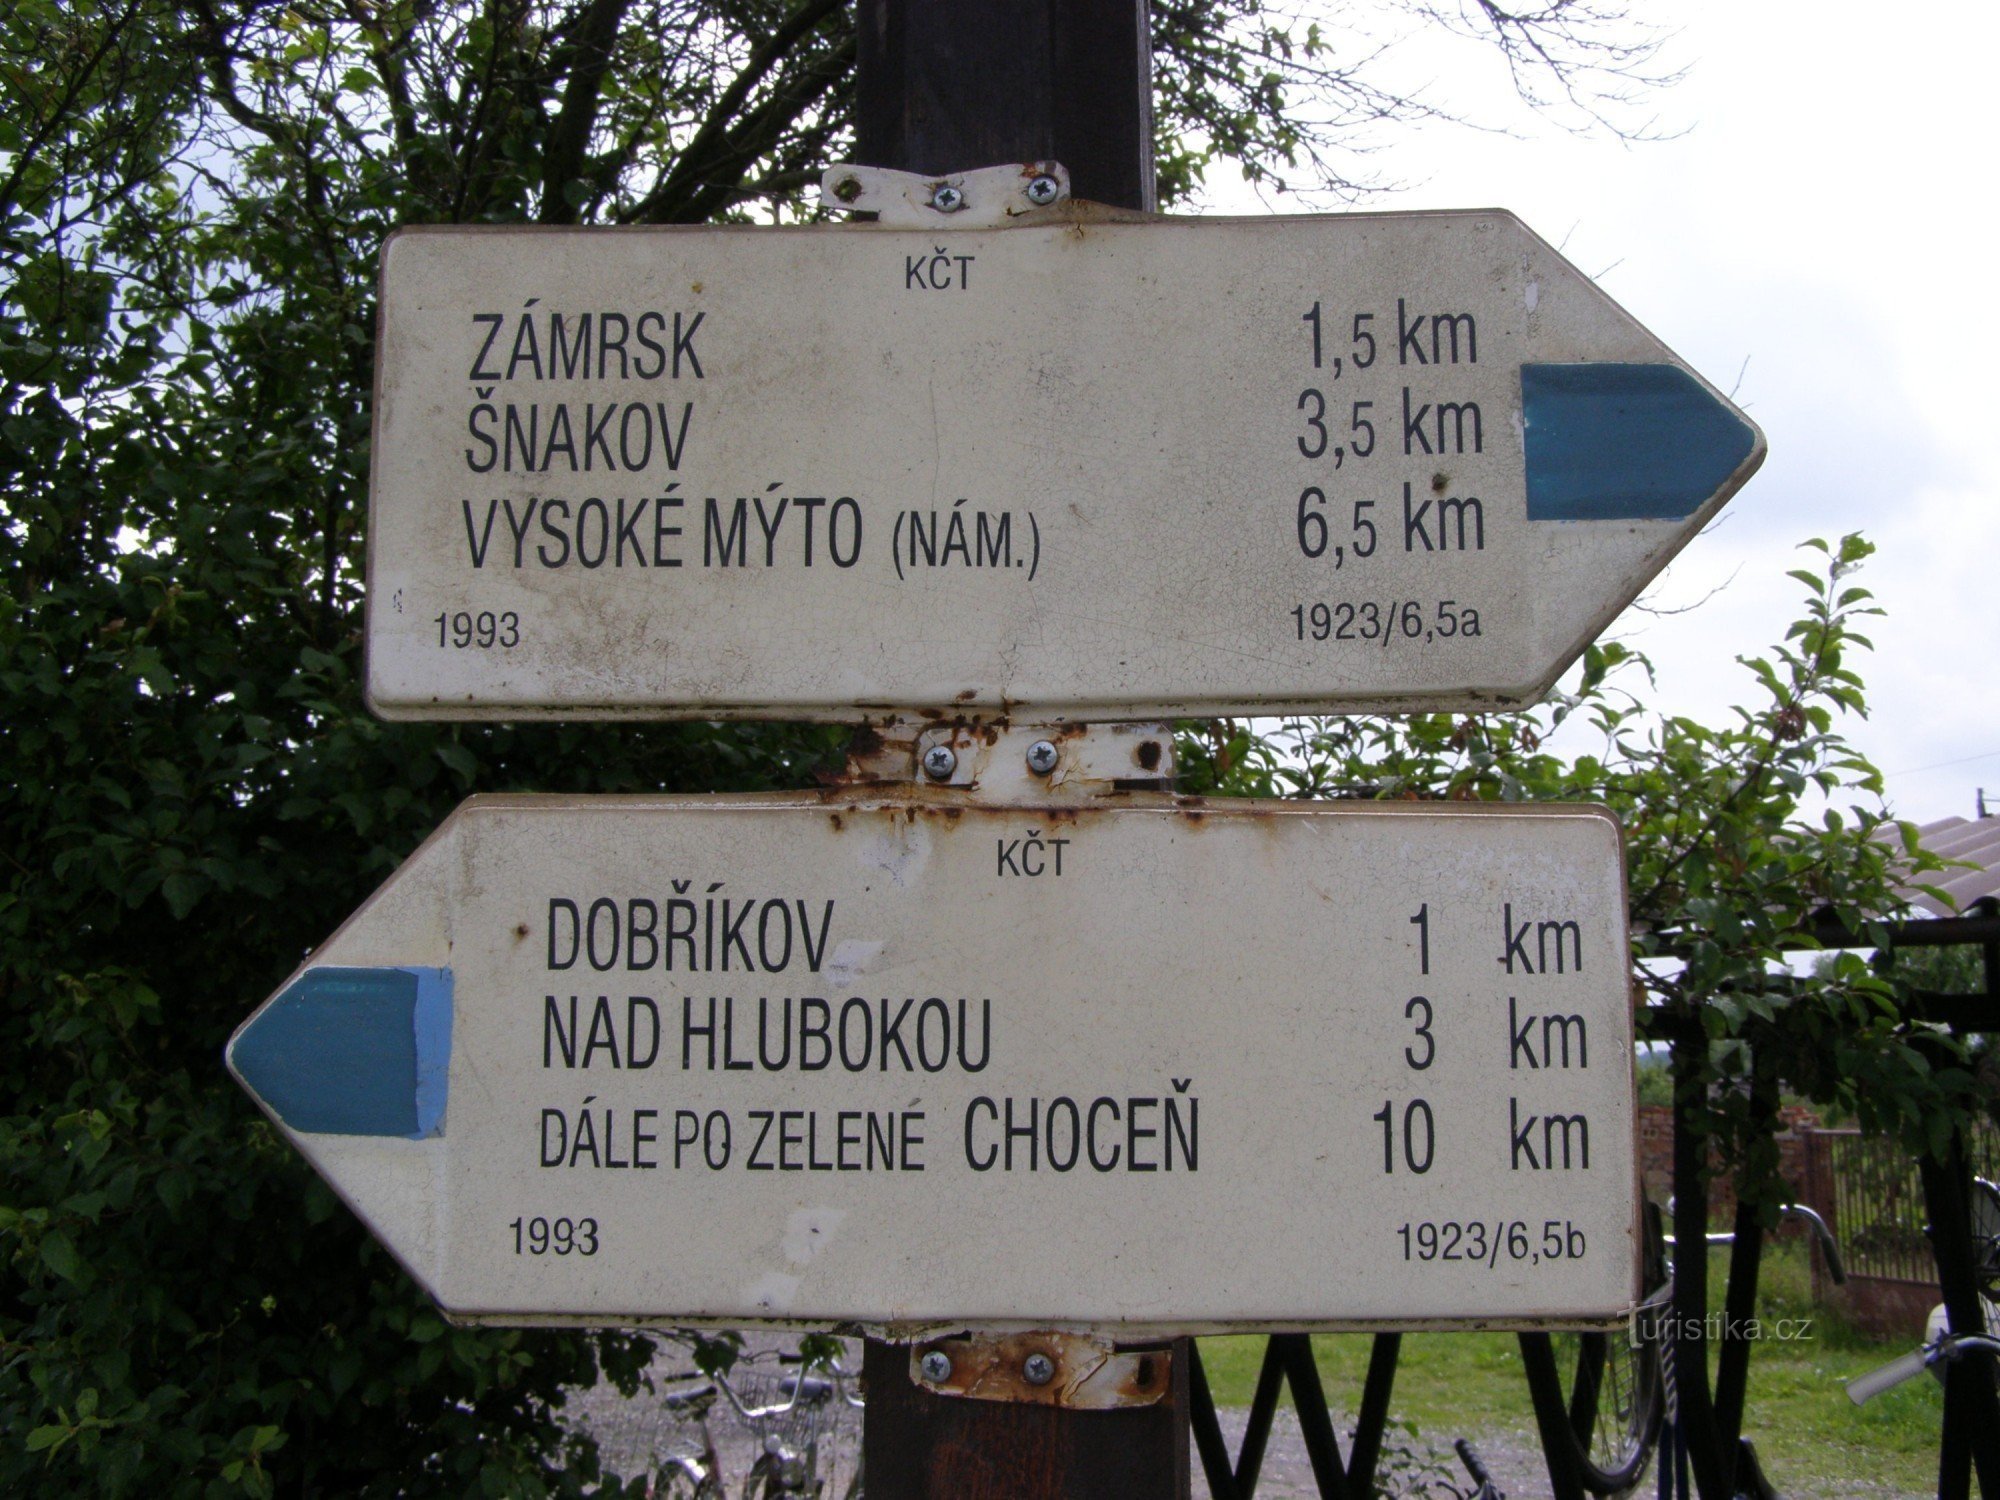 ngã tư du lịch Dobříkov - đường sắt